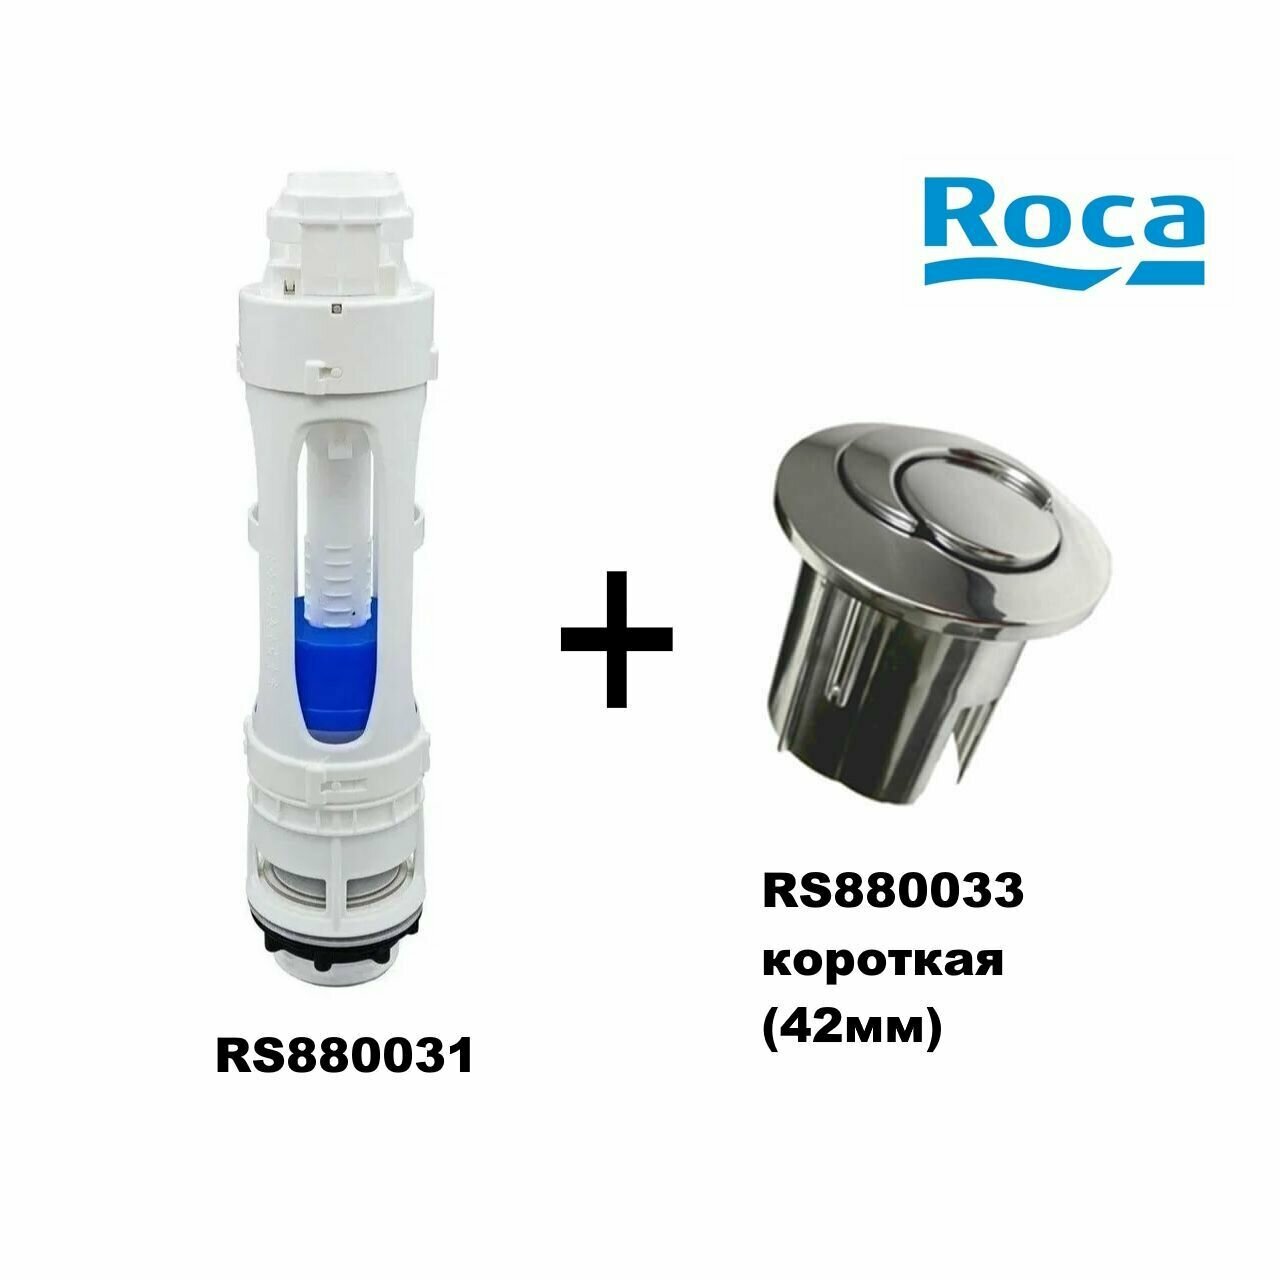 Сливной механизм Roca RS880031+ кнопка RS880033(короткая)